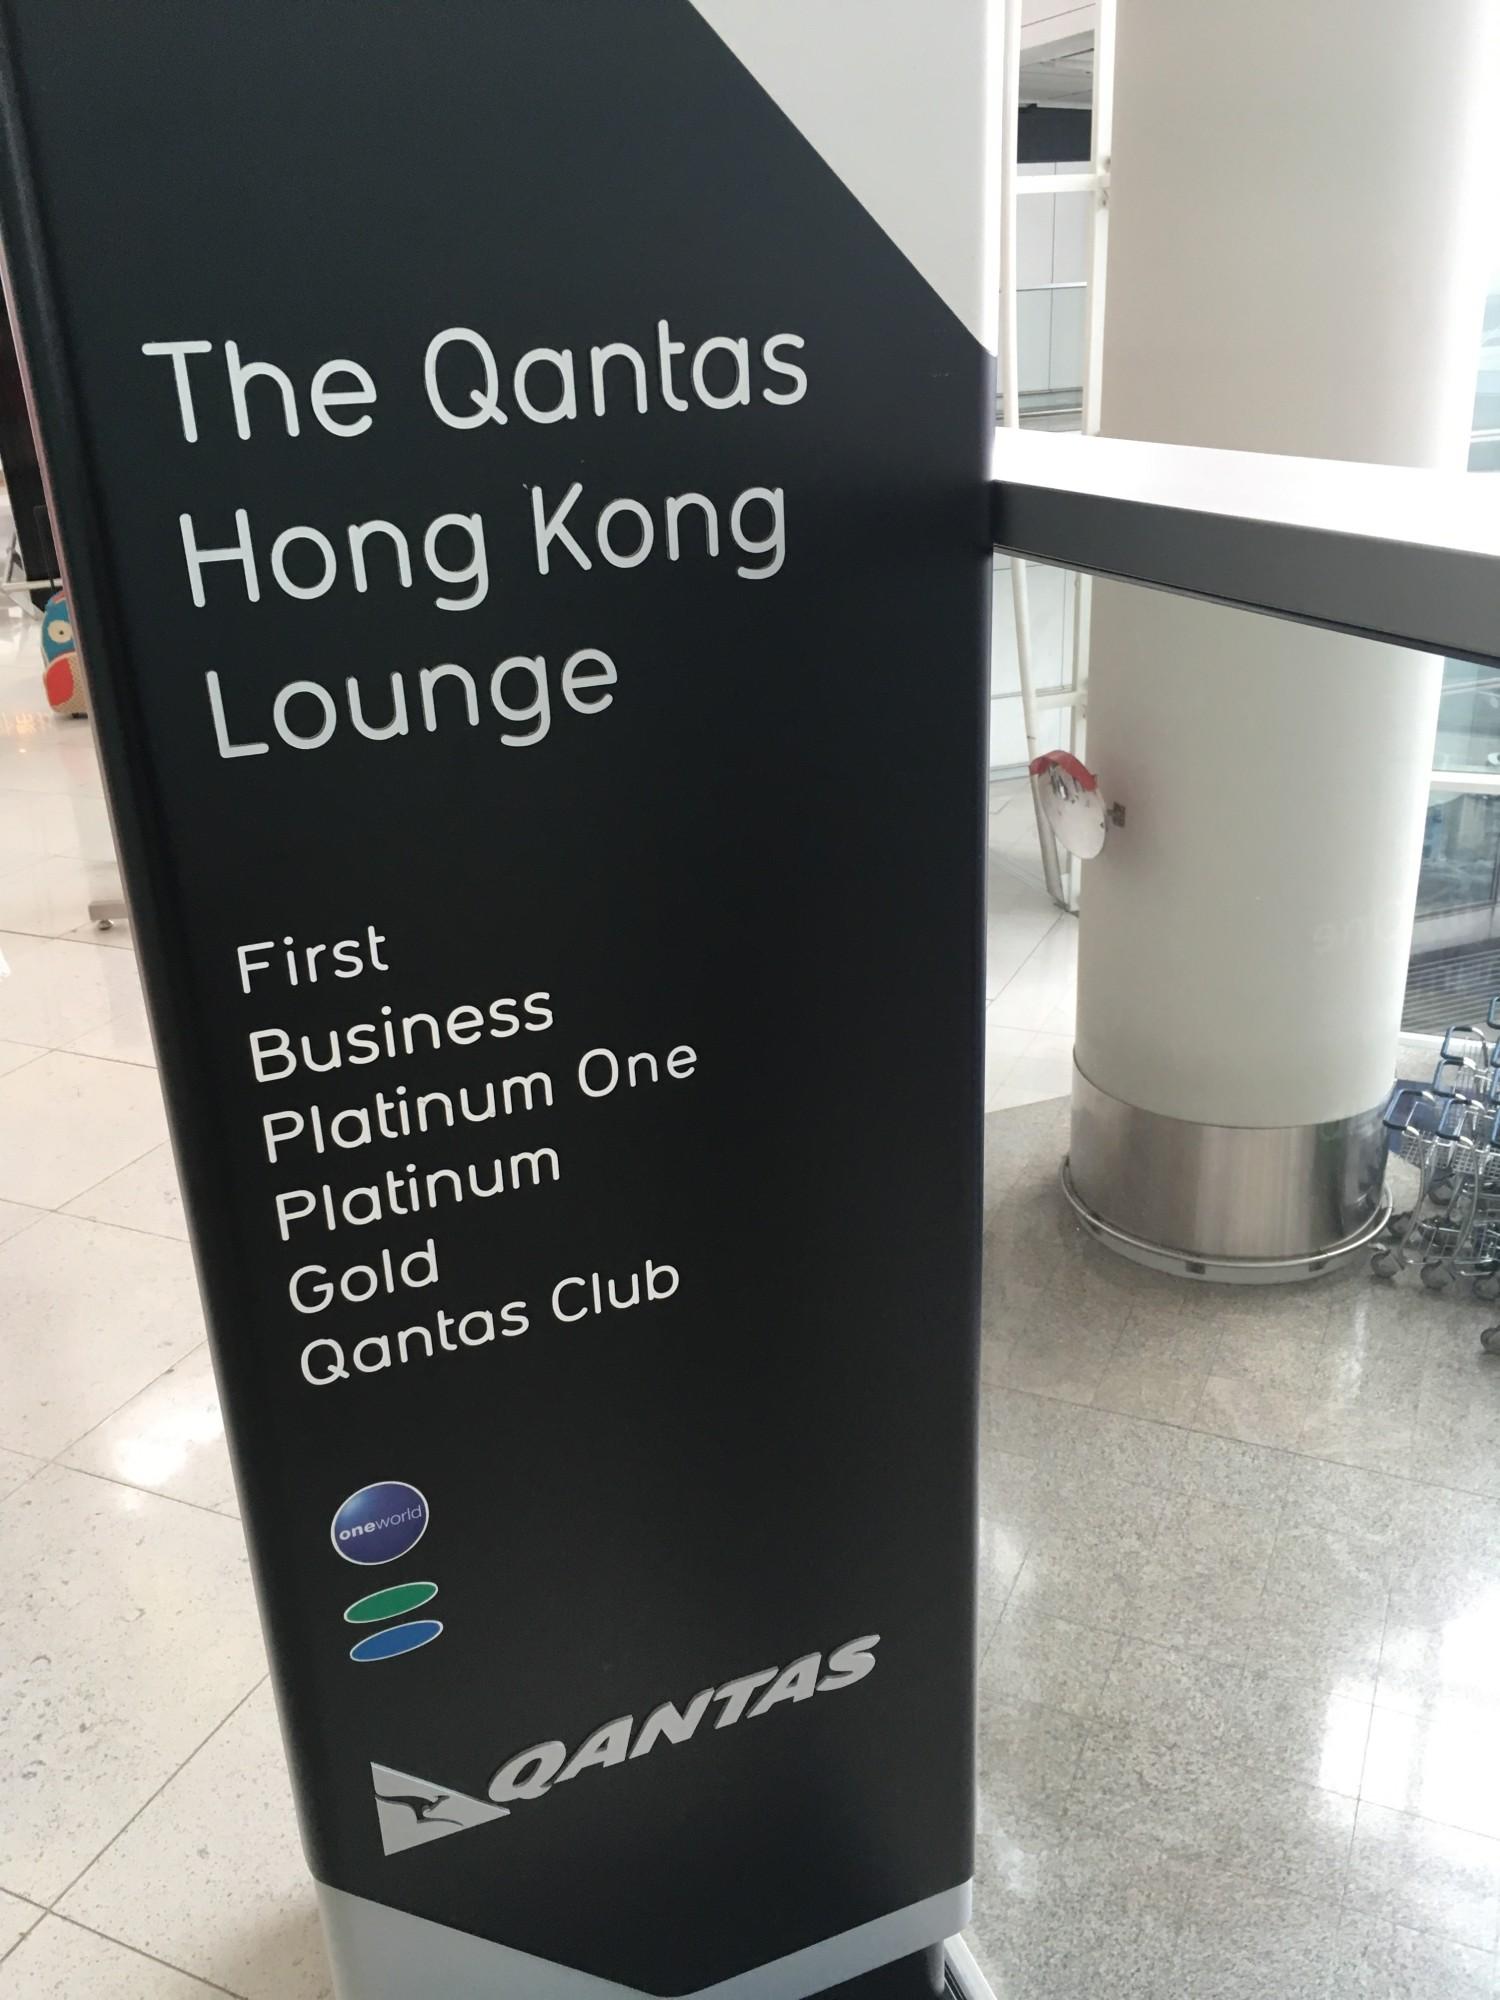 The Qantas Hong Kong Lounge image 94 of 99